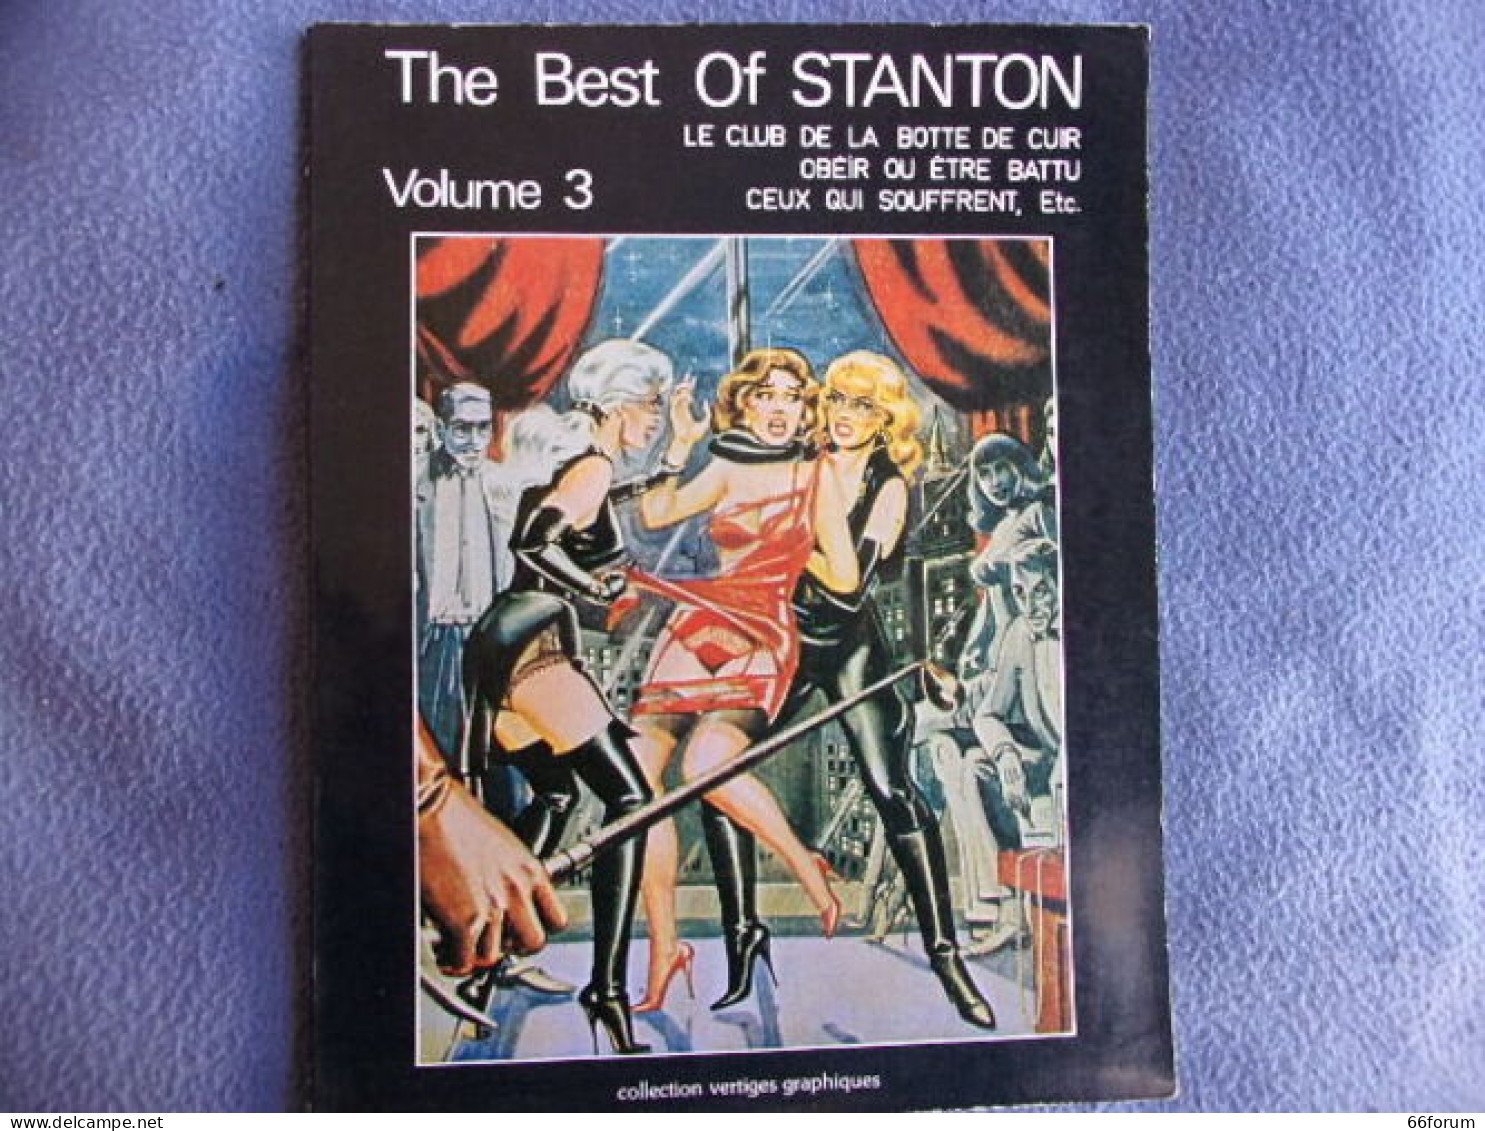 The Best Of Stanton Volume 3 - Santé